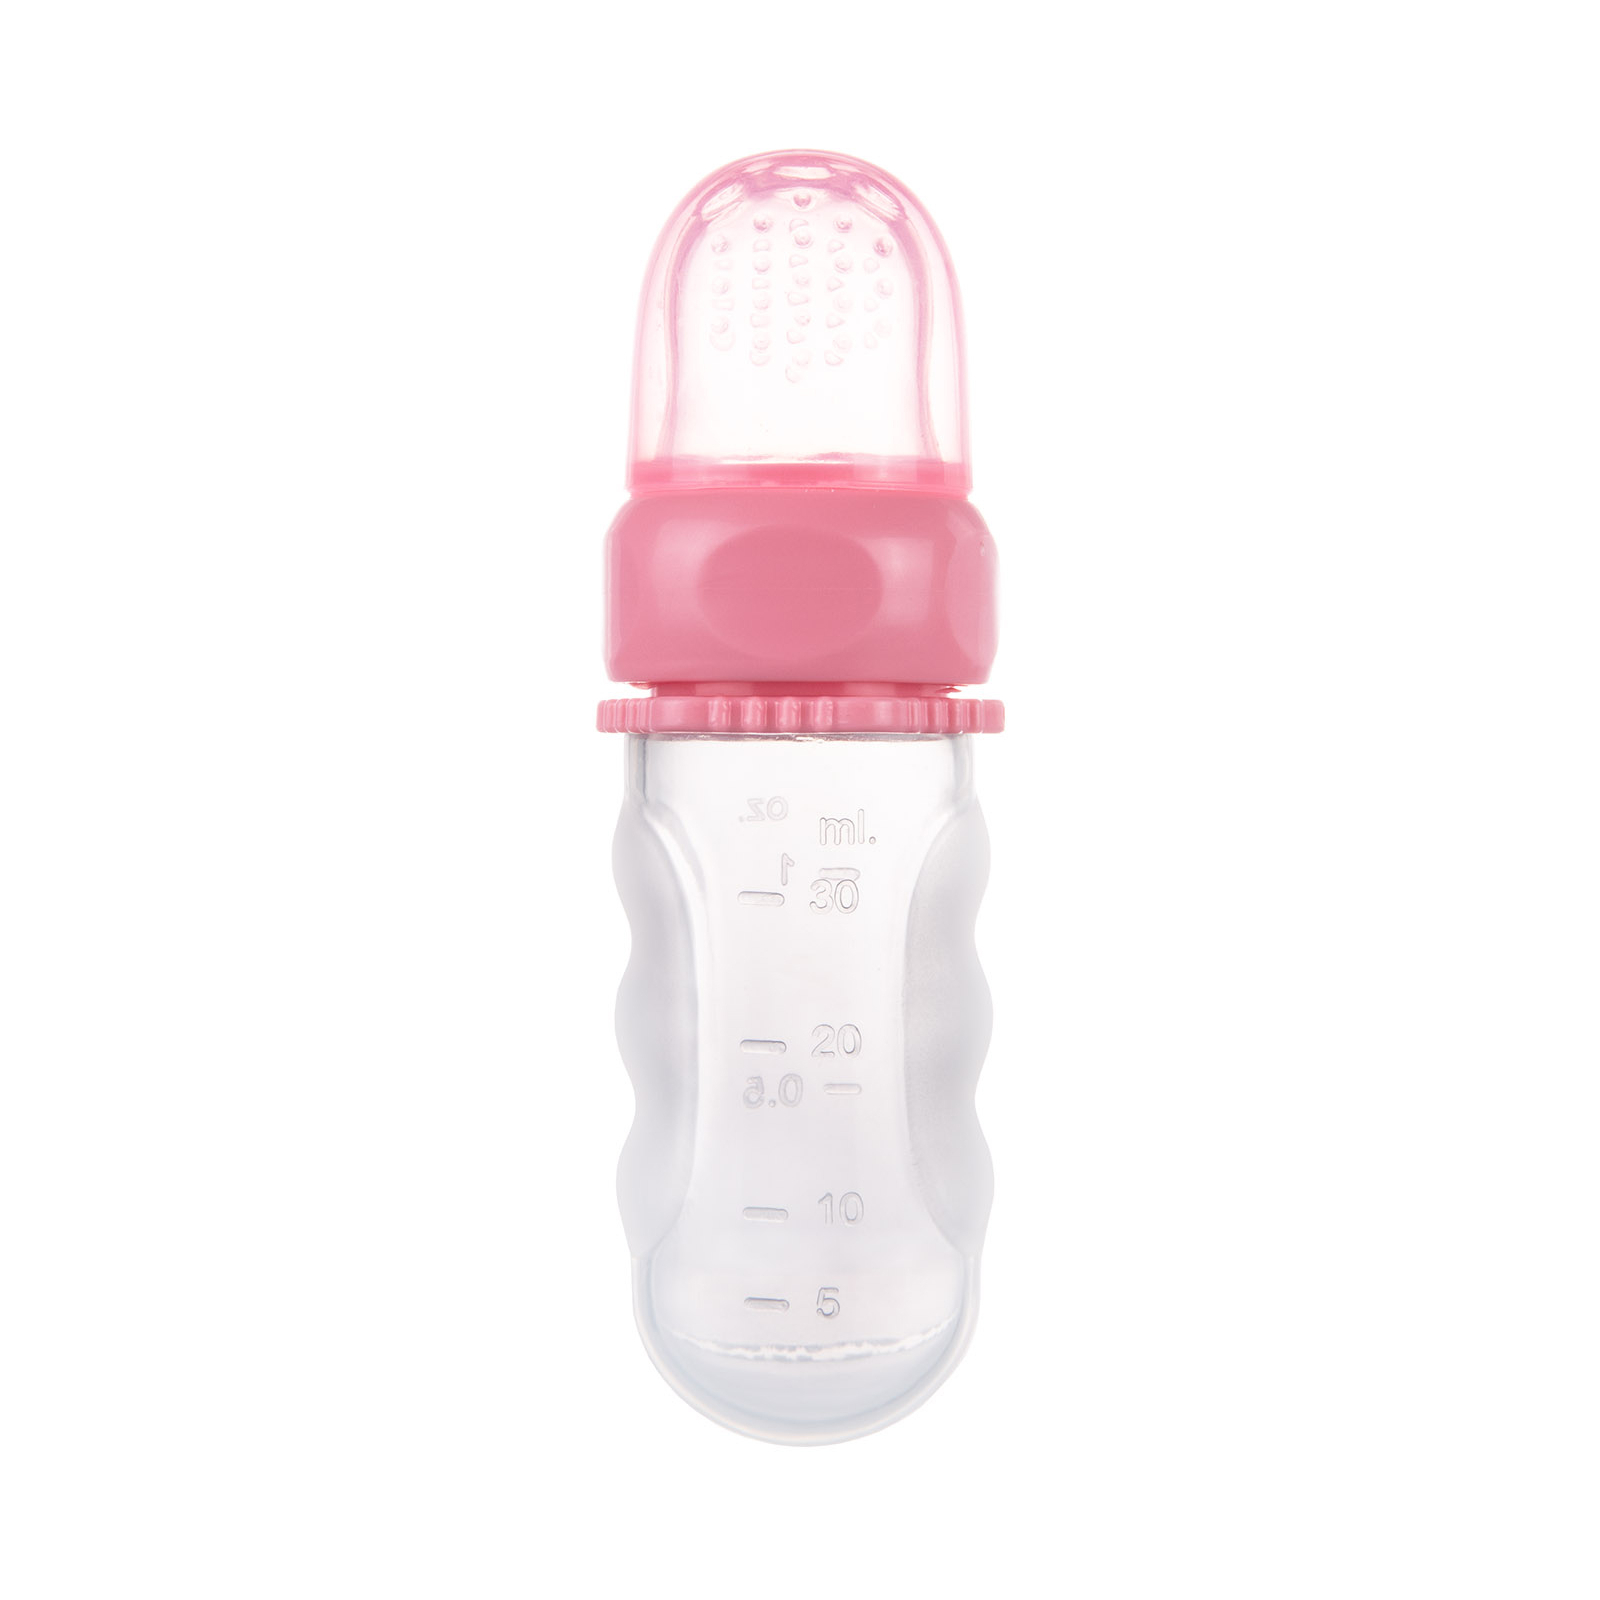 Ниблер Canpol babies силиконовый для кормления – розовый (56/110_pin) изображение 3